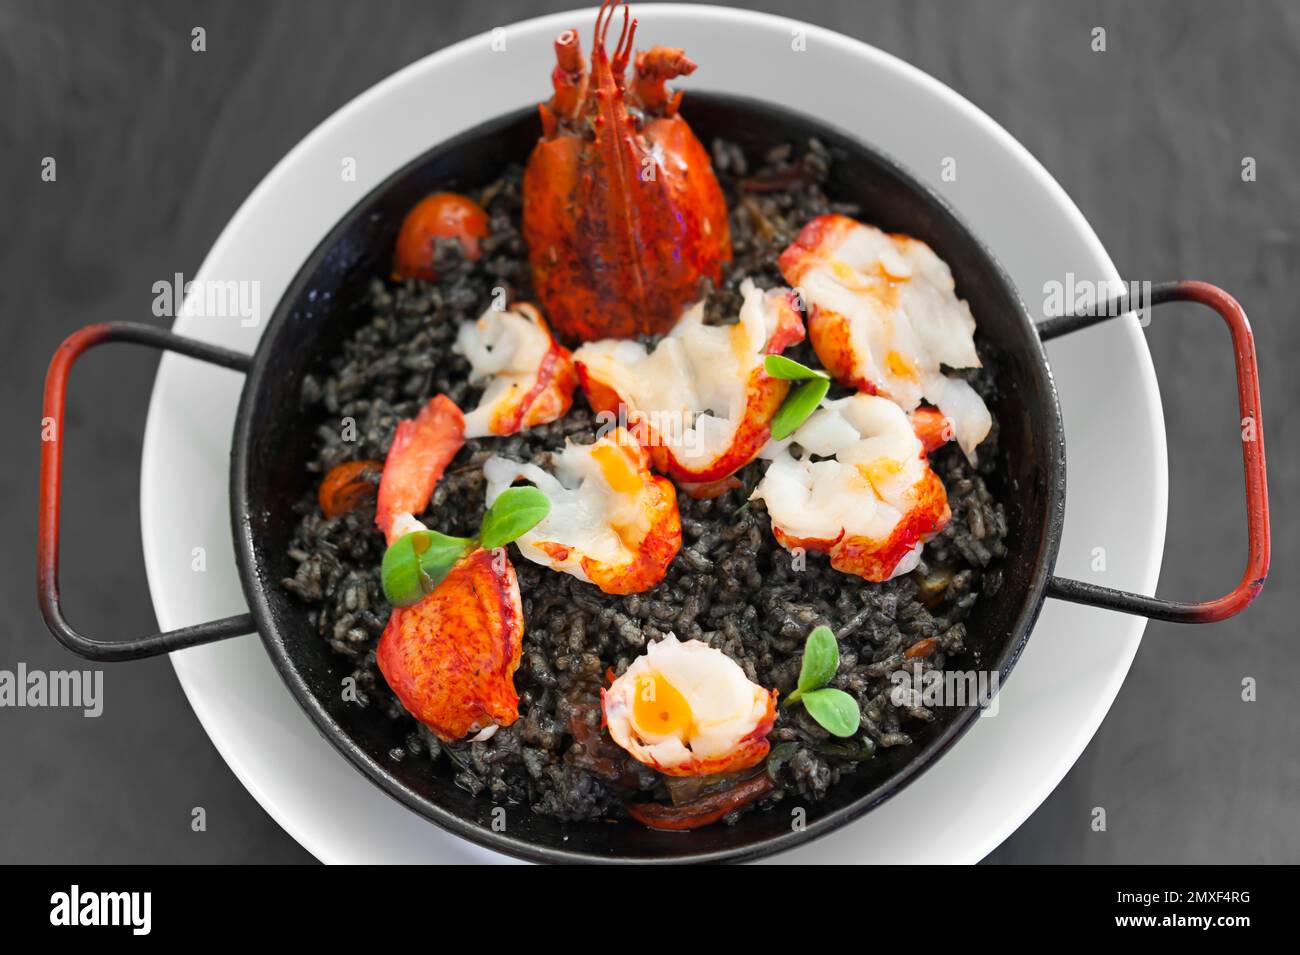 Solo-Paella mit Hummerscheiben, Tomatenstückchen, Tintenfischsauce, Kräutern, Safran. Heißes Gericht auf weißem Teller. Essen auf einem schwarzen Tisch. Moderne Verpflegung. Stockfoto